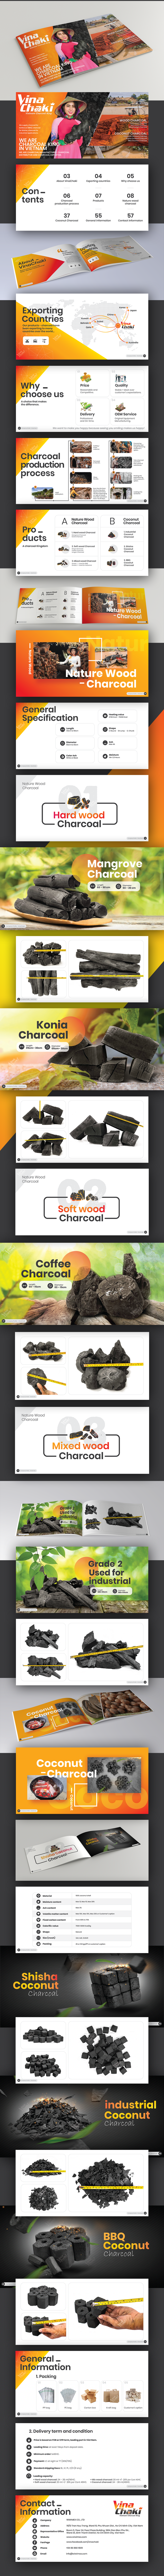 brochure Catalogue charcoal coal coal making farmer vietnam shisha charcoal Coconut BBQ